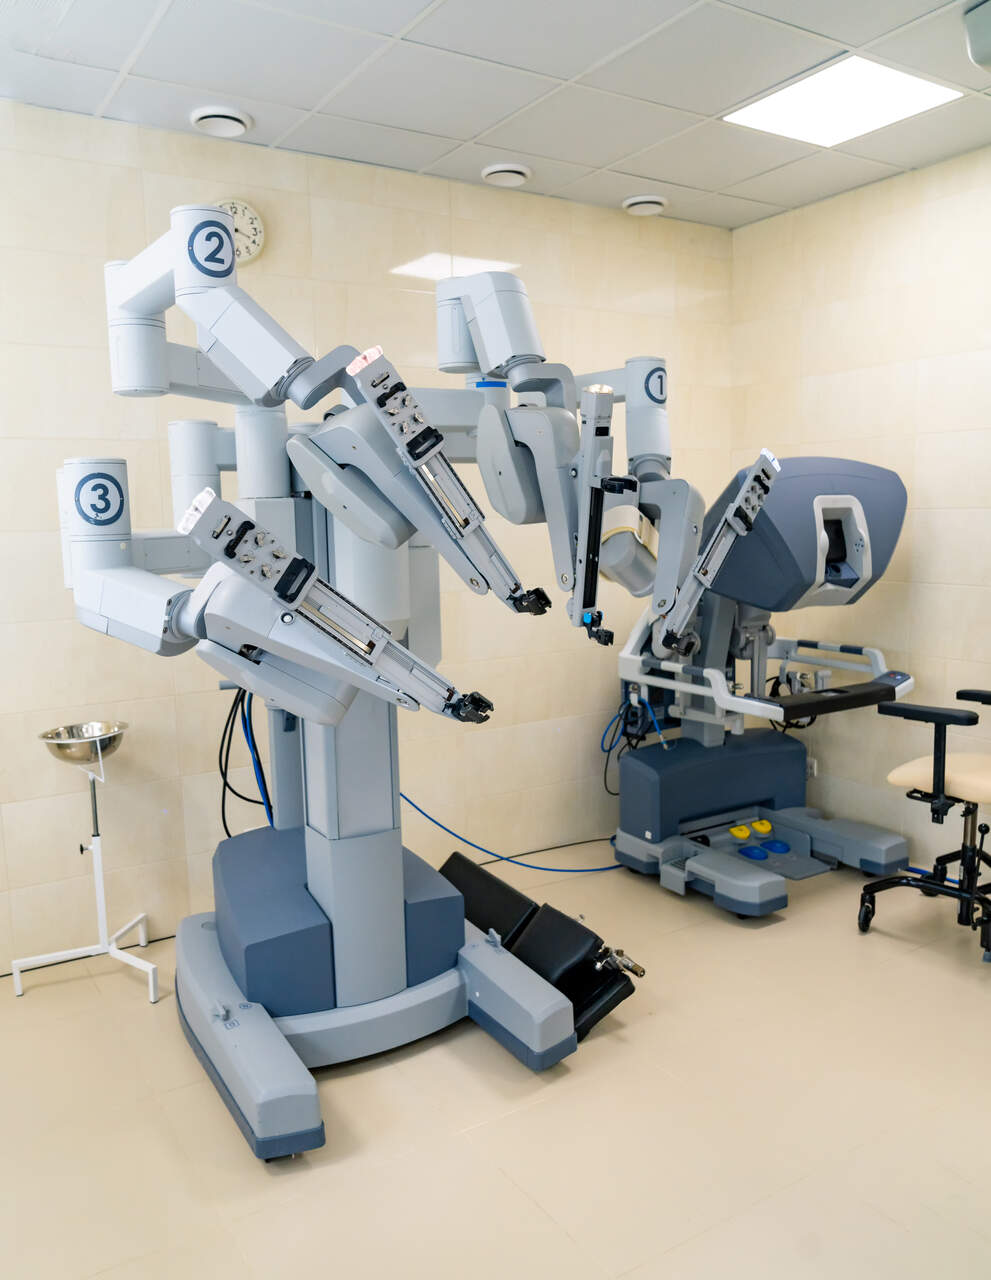 Cirurgia Robótica Goiânia - Por que a prostatectomia robótica tem melhor eficácia?